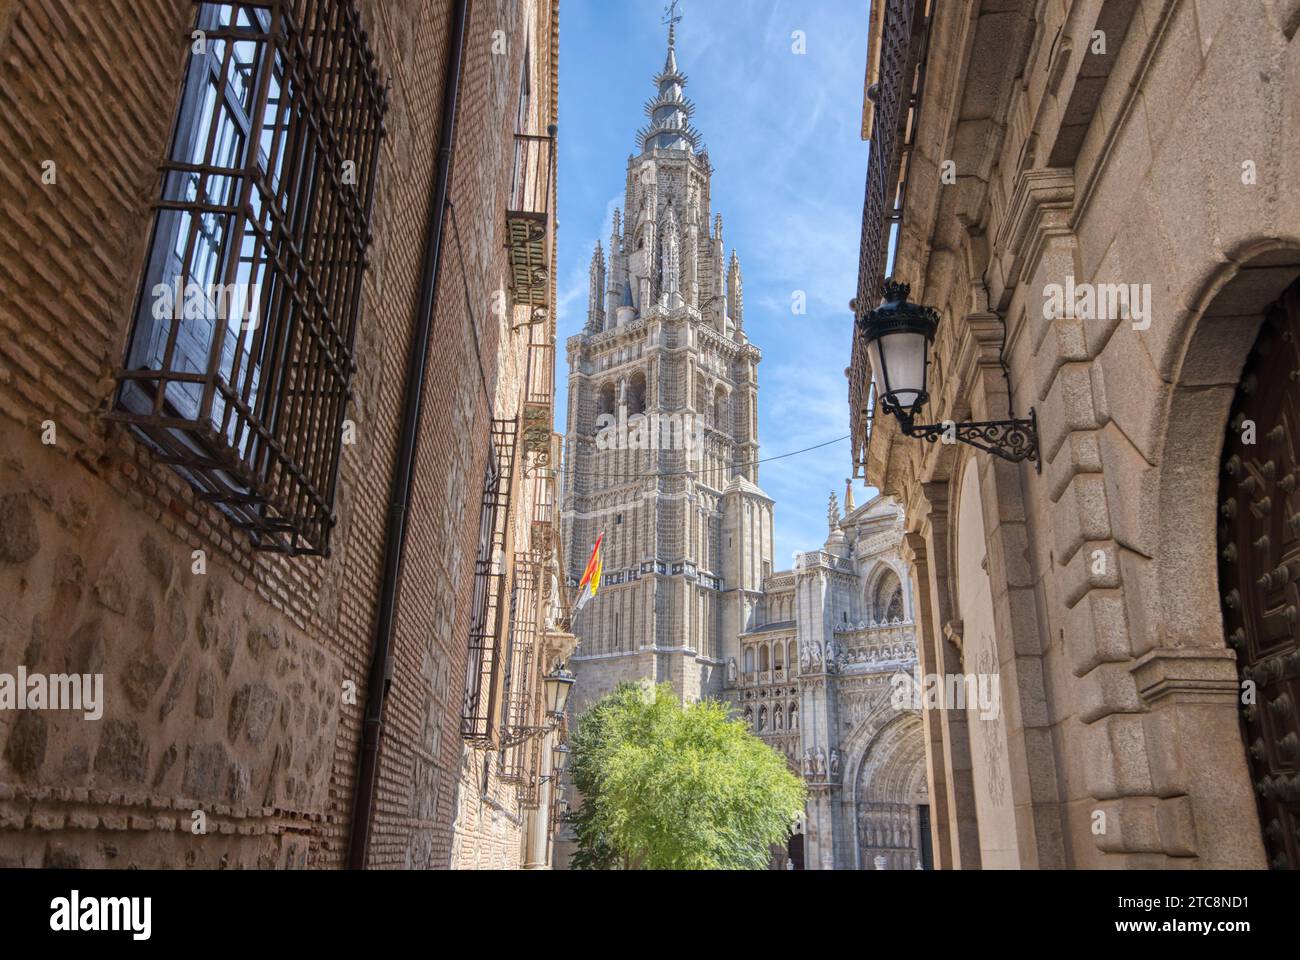 La cathédrale Primatiale du 13e siècle de Sainte-Marie de Tolède apparaît à travers les rues de la ville historique de Tolède, en Espagne Banque D'Images